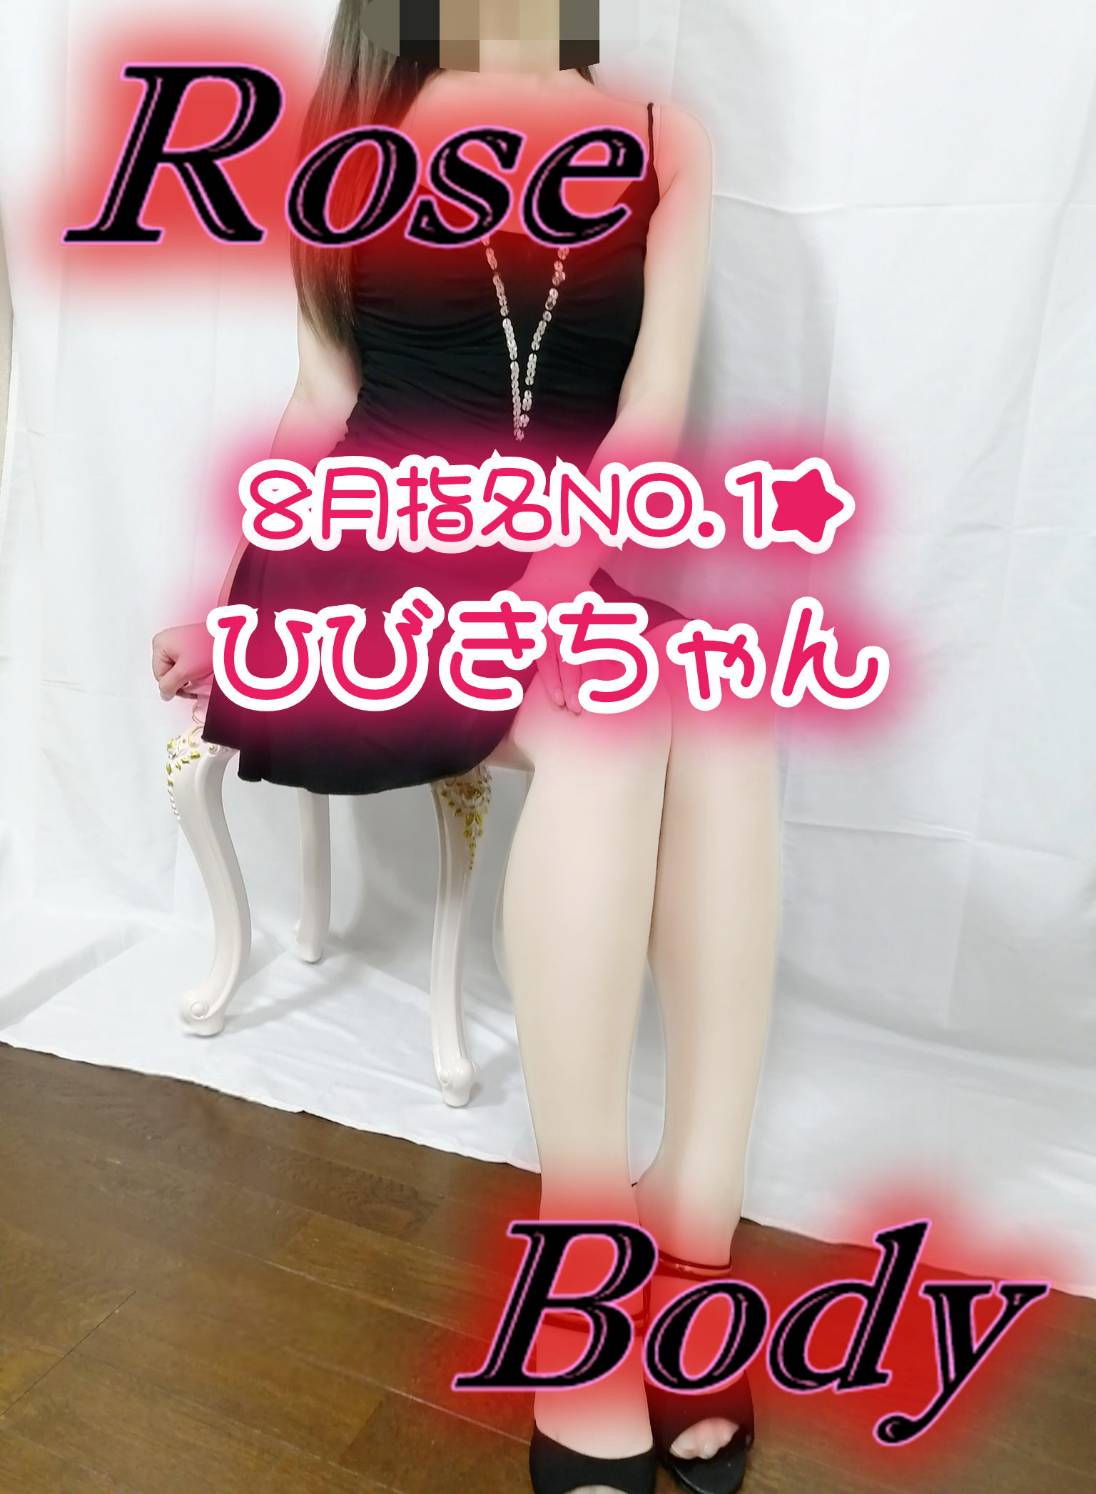 十和田rose bodyおすすめ女の子4